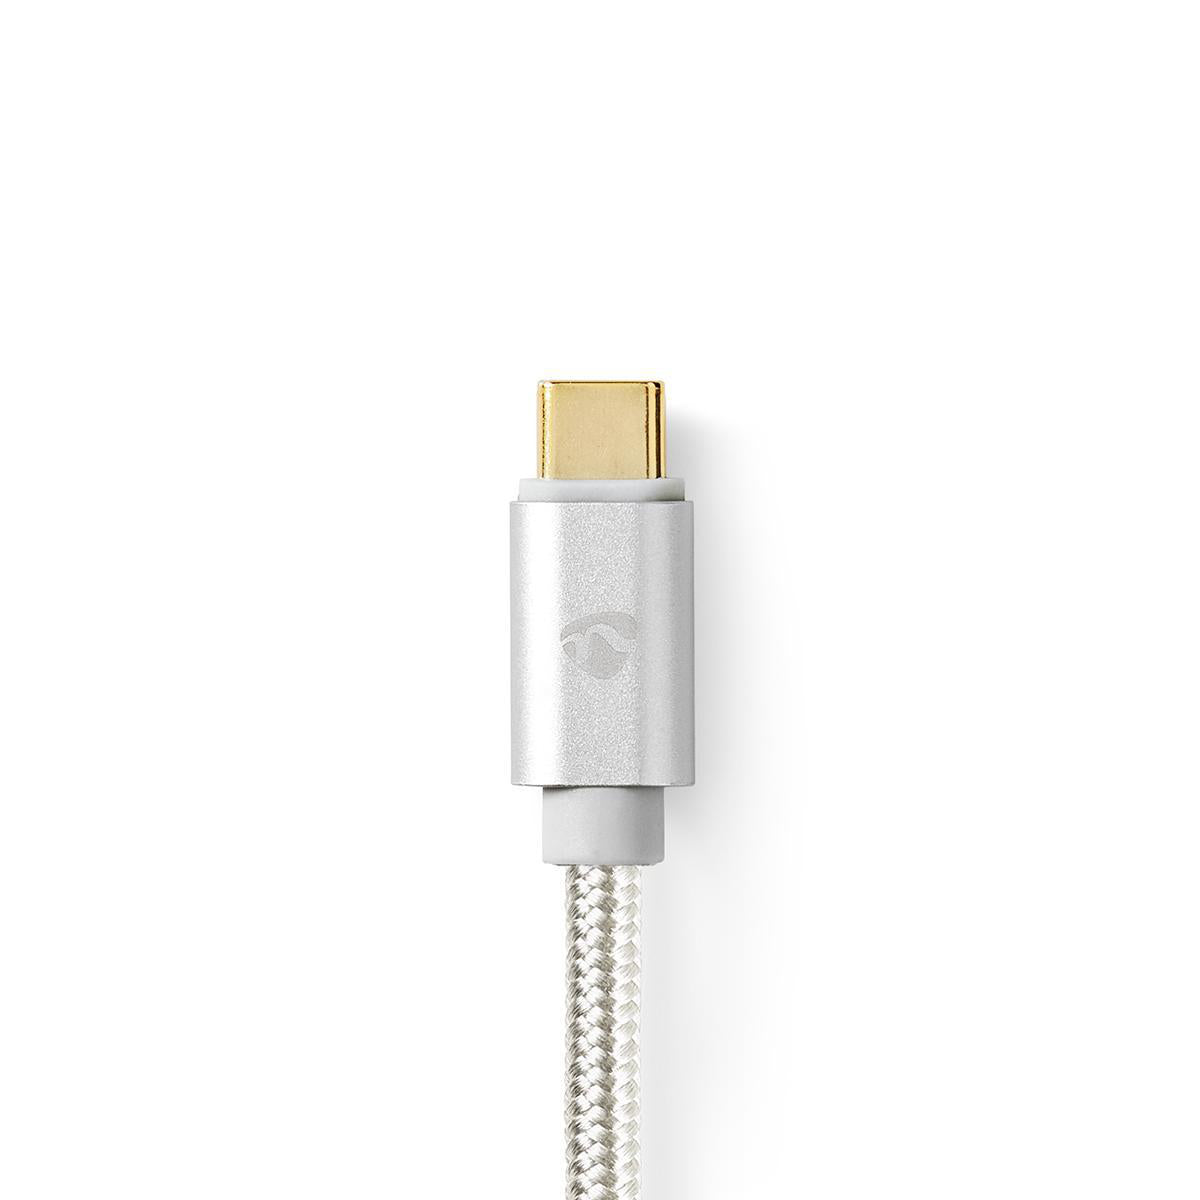 USB-C™ Adapter | USB 3.2 Gen 1 | USB-C™ Stecker | HDMI™ Stecker | 4K@60Hz | 18 Gbps | 2.00 m | Rund | Vergoldet | Geflochten / Nylon | Aluminium | Verpackung mit Sichtfenster